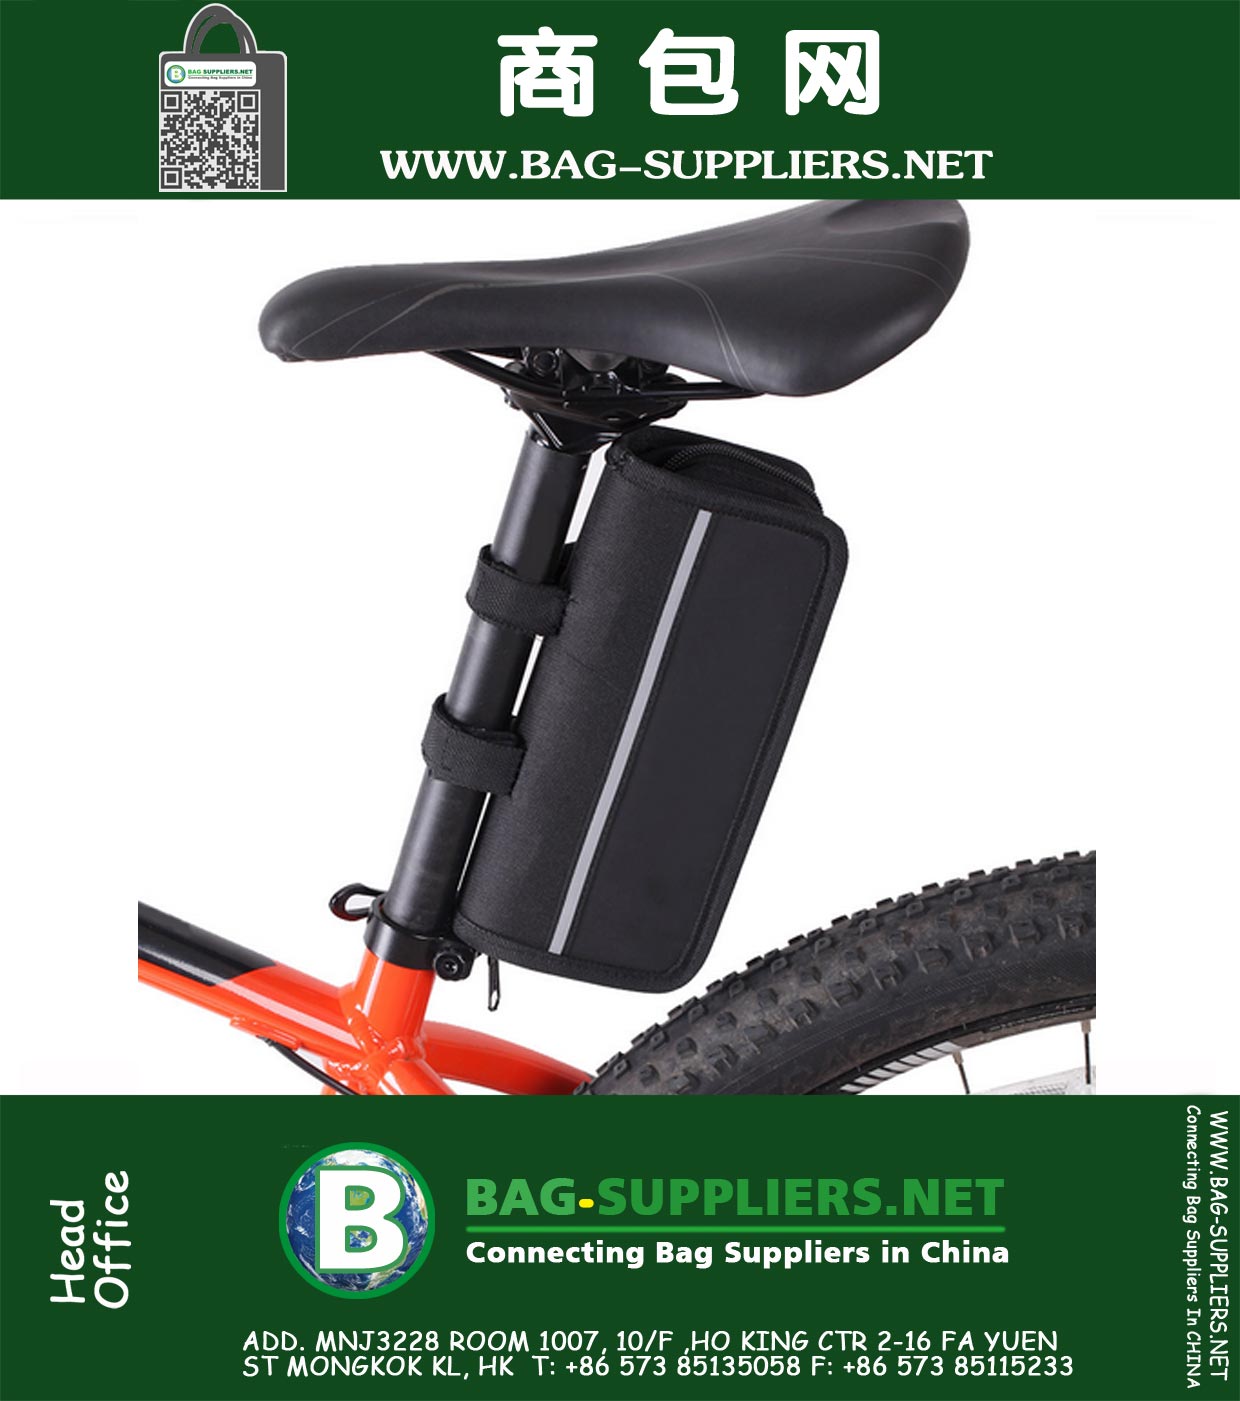 Fahrrad-Reparatur-Werkzeug-Multifunktionswerkzeug Kit Rahmen Schlauch-Beutel-Minipumpe und 16 in 1 Gummireifen-Reifen-Reparatur-Werkzeug-Fahrrad mit Beuteln-Pumpe